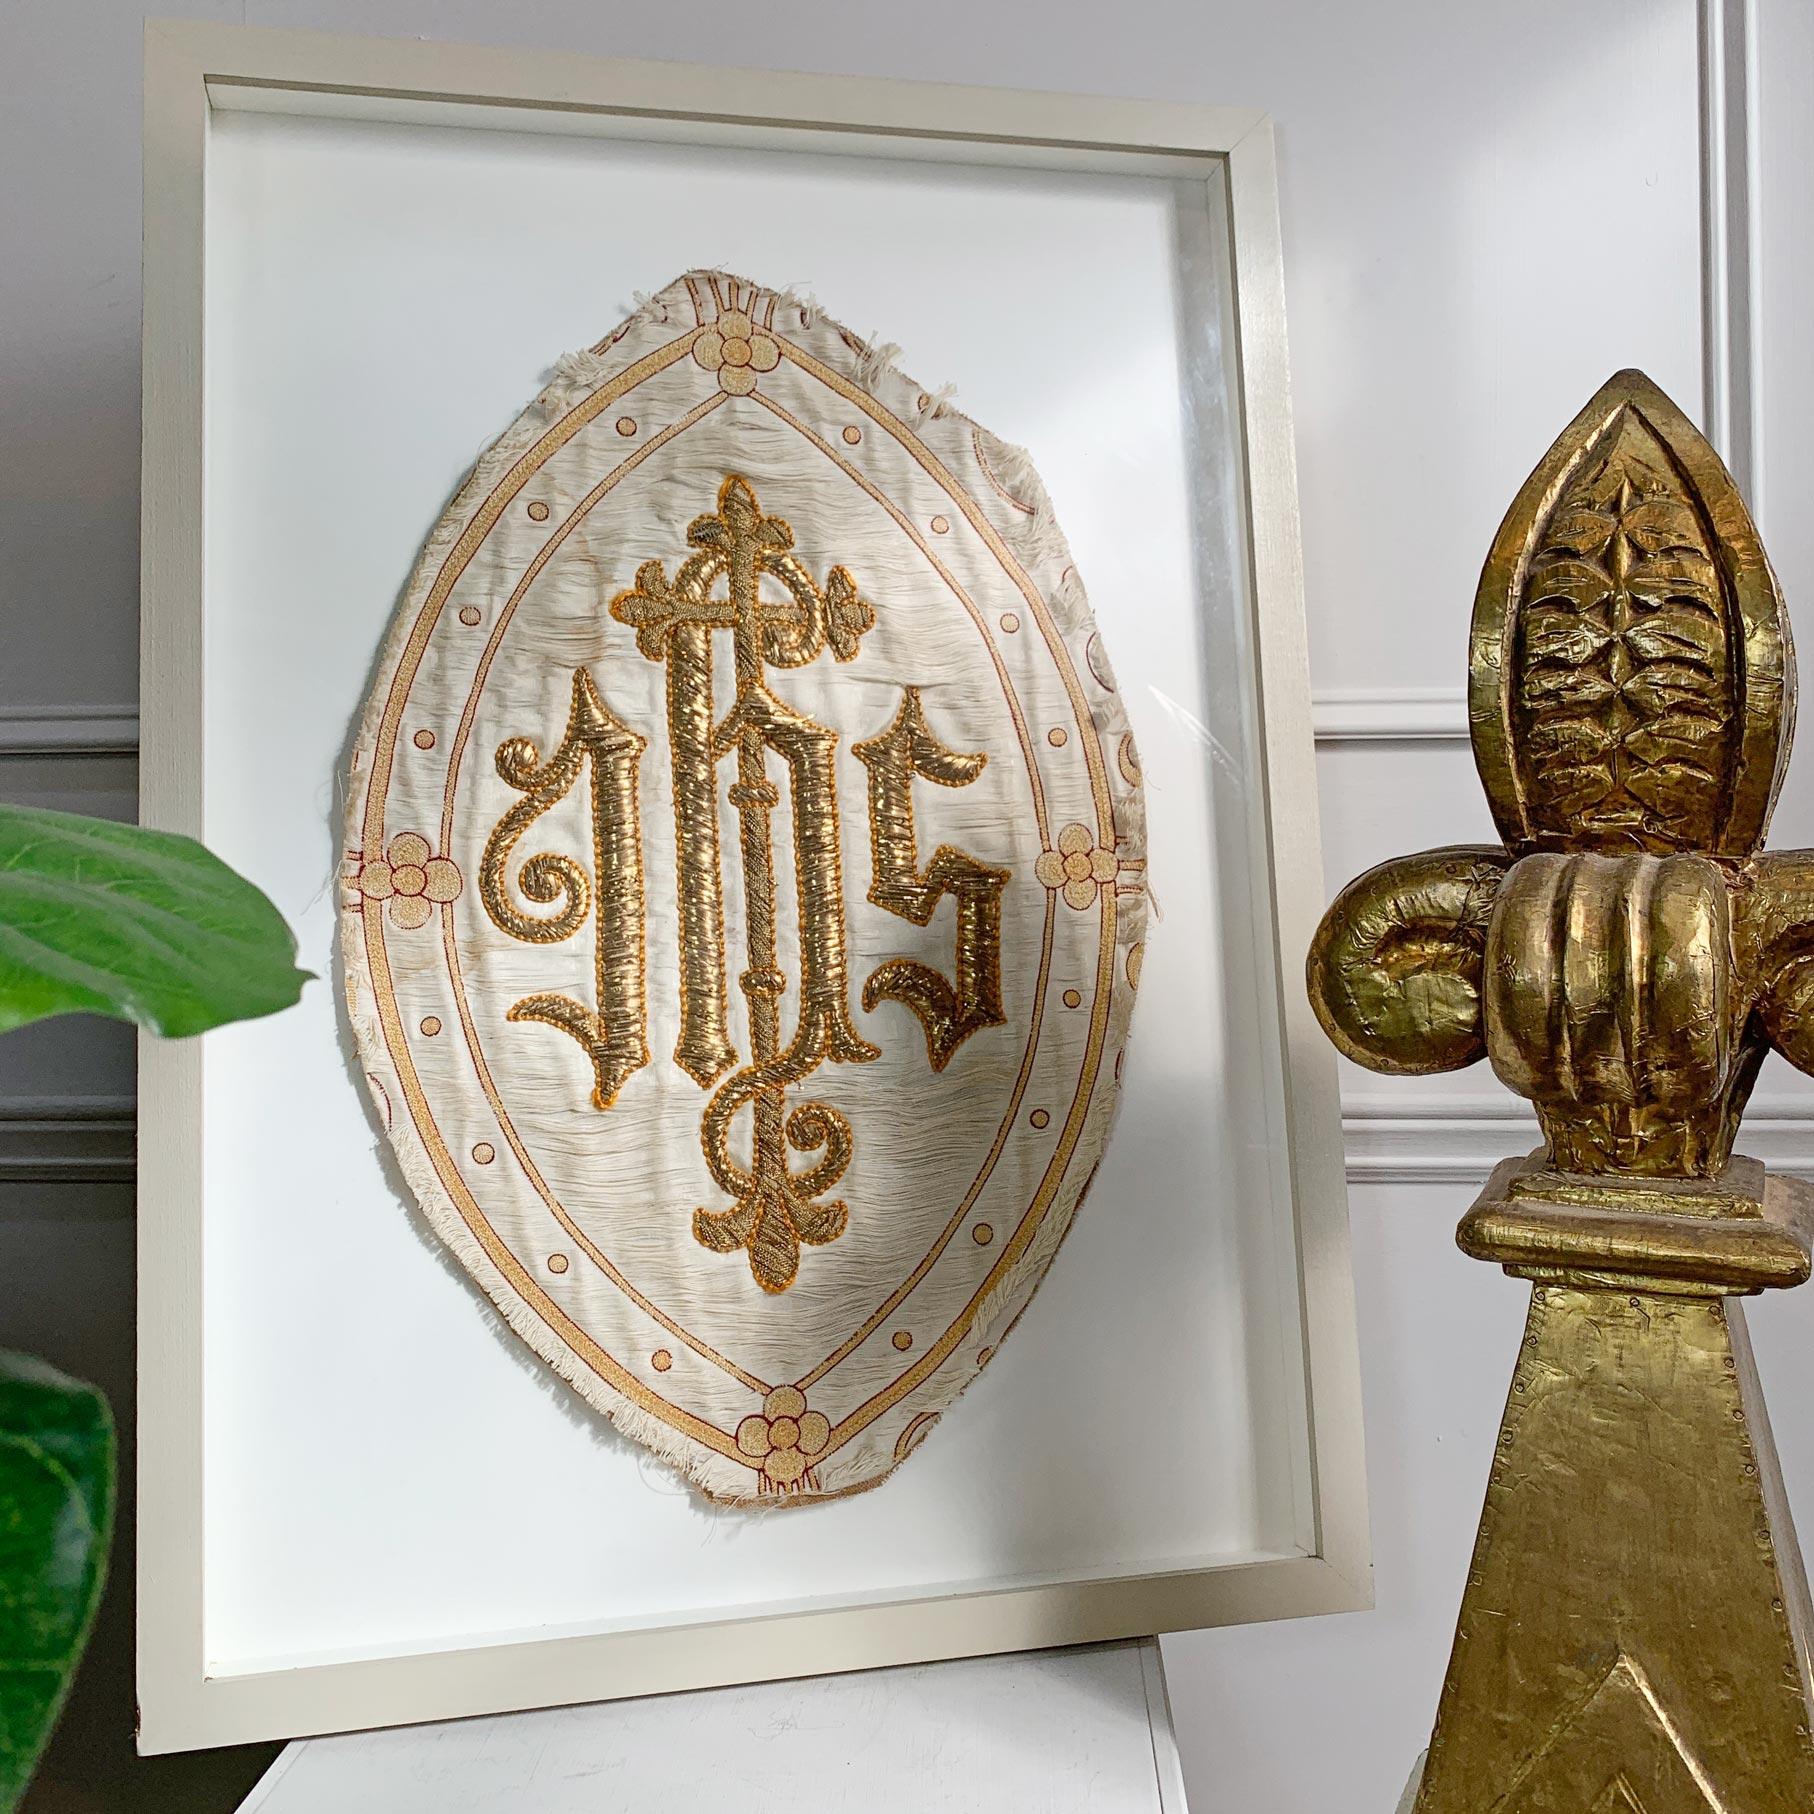 Antike französische religiöse Tafel mit IHS-Stickerei

IHS - In seinem Dienst



Religiöses französisches Stickereifragment von einer Kirchentafel oder einem Gewandkleid



Der Grundstoff ist ein cremefarbener gewebter Damast, die IHS-Initialen sind